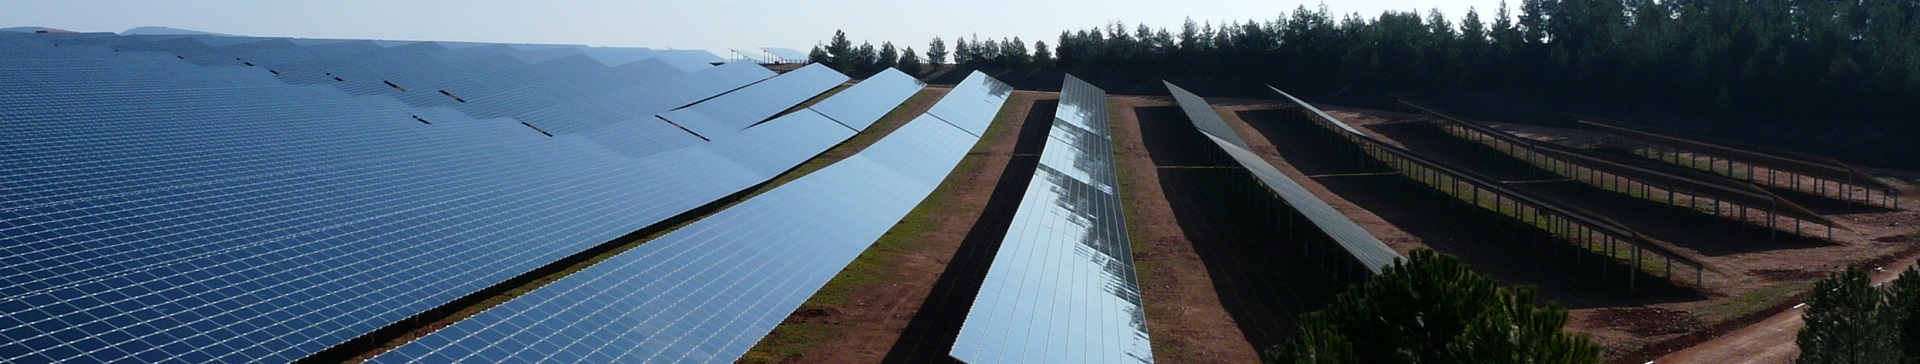 Tarifs d'achat d'électricité solaire photovoltaïque